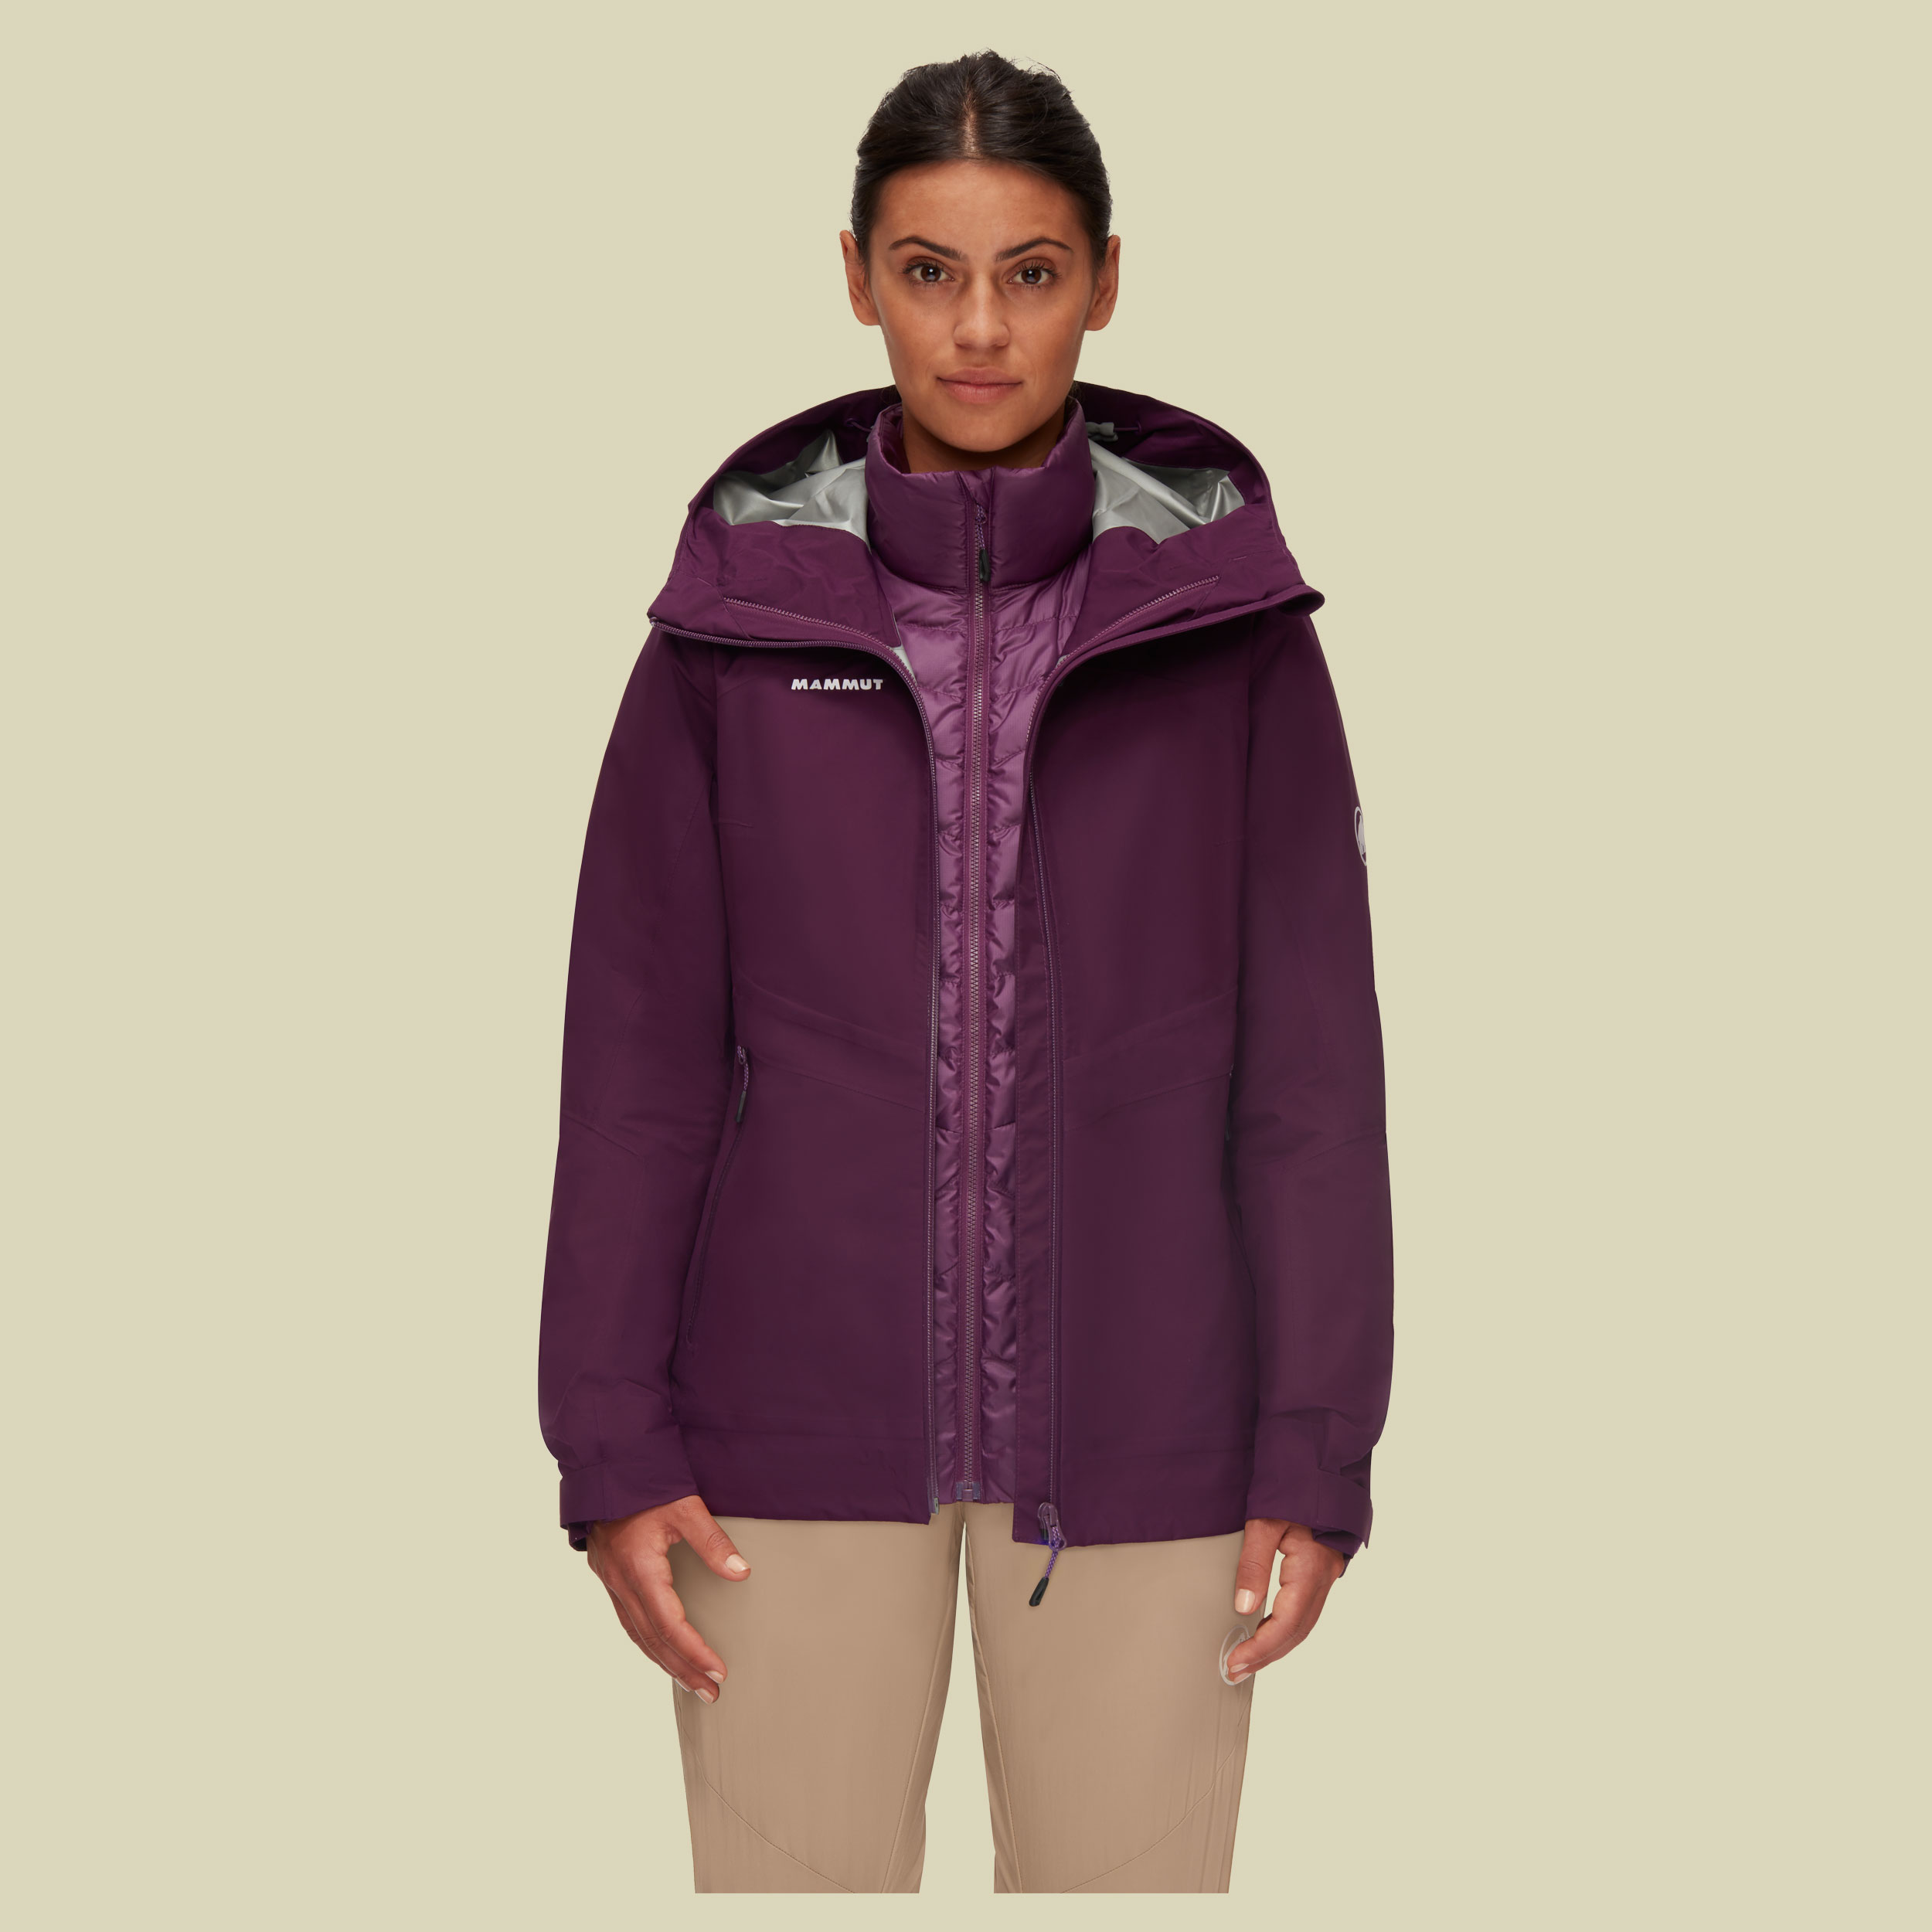 Convey 3 in 1 HS Hooded Jacket Women Größe XS Farbe grape-grape